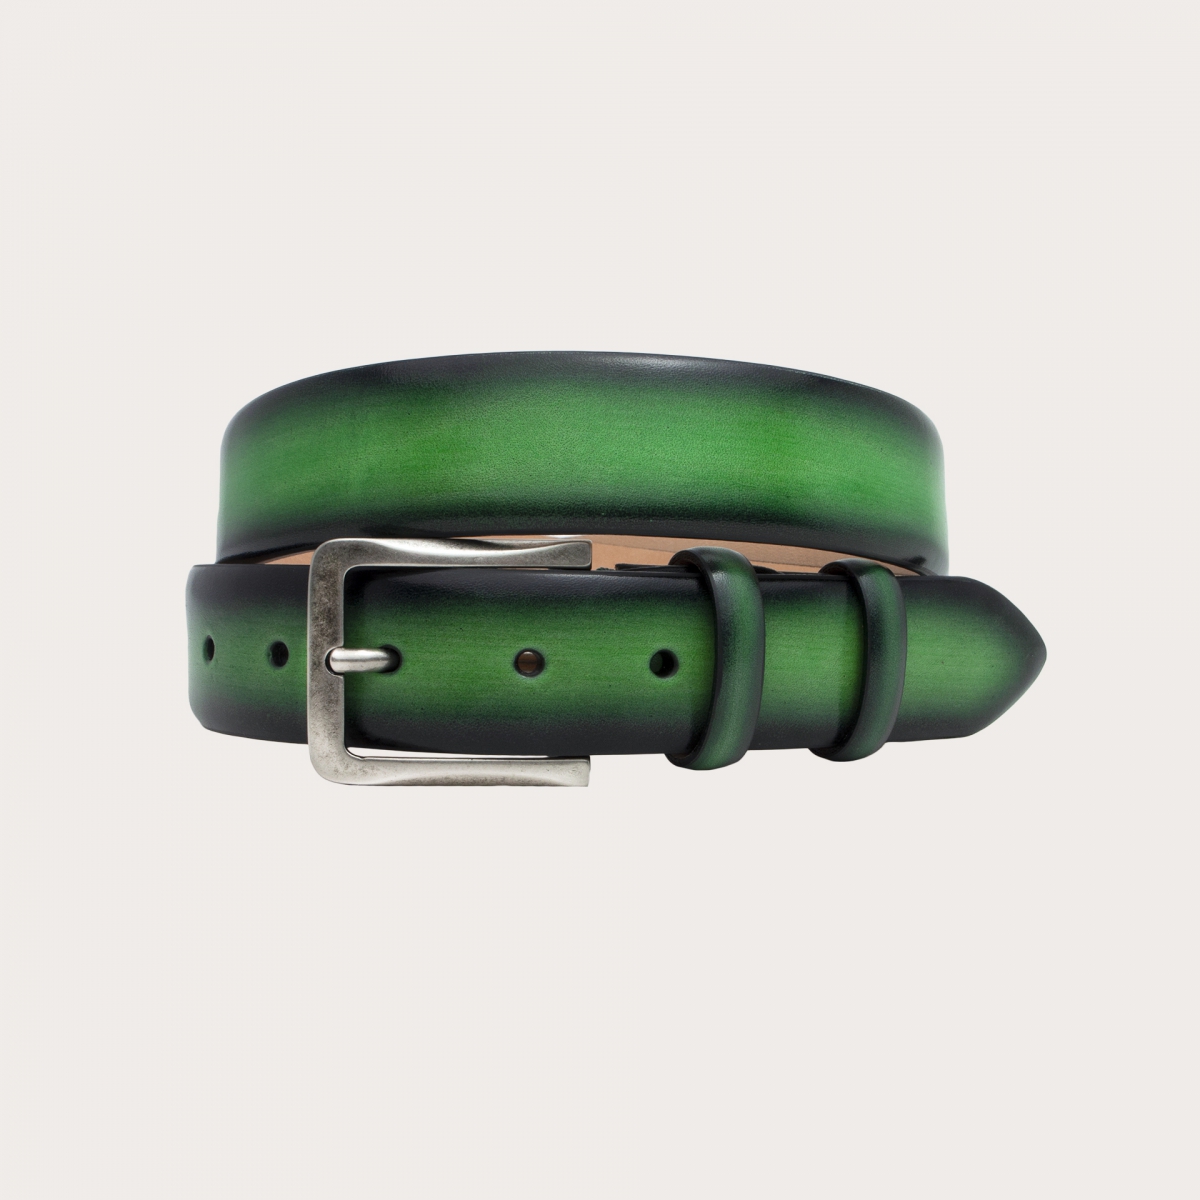 BRUCLE Originaler grüner Gürtel aus handgepuffertem und handschattiertem Leder